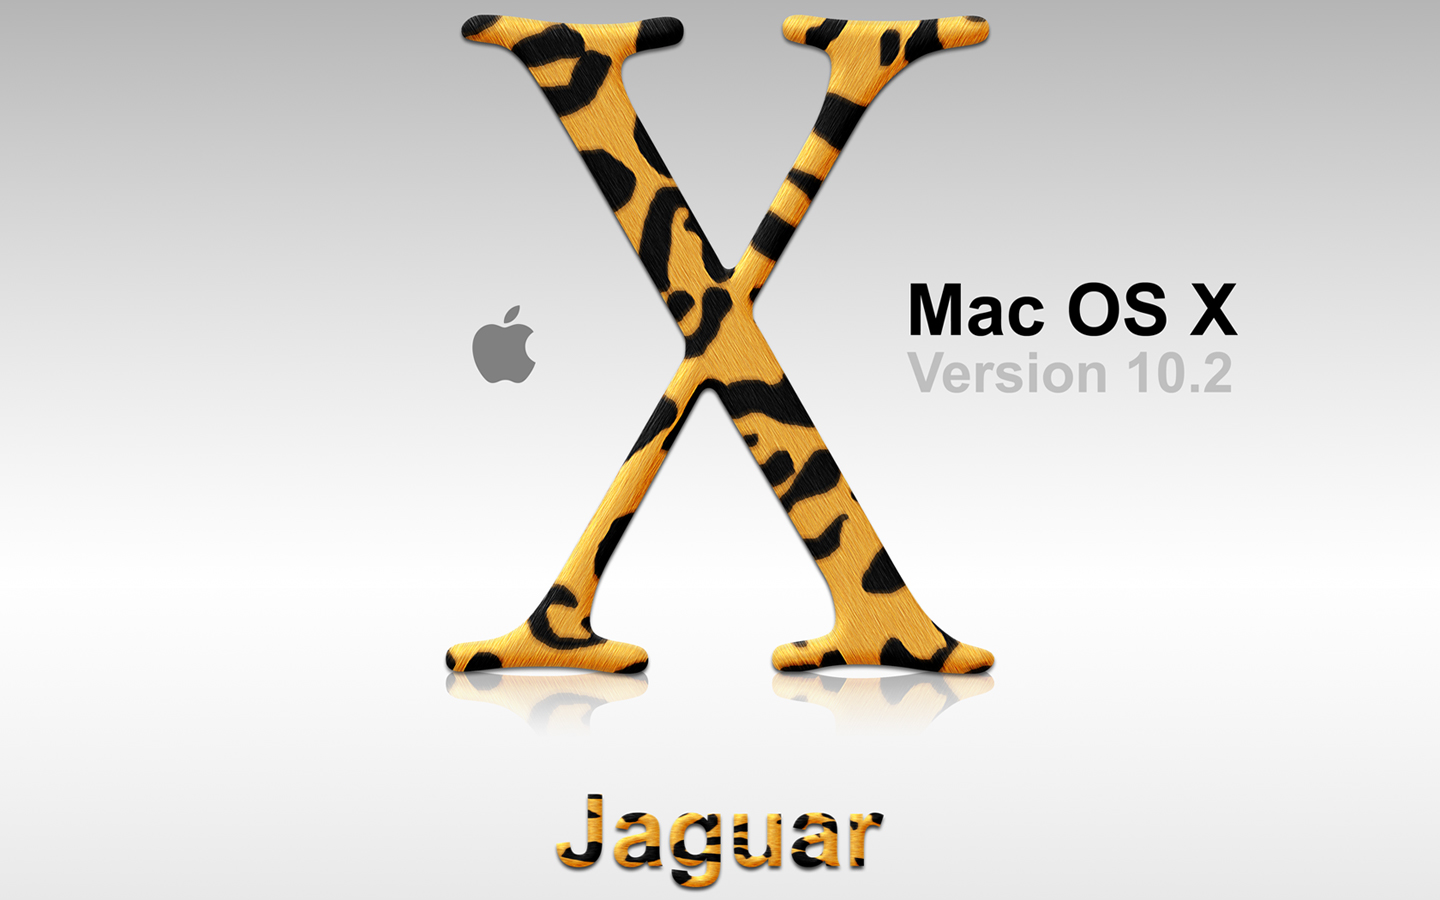 23 августа в истории: выход культовой ролевой игры Ultima III: Exodus и операционной системы Mac OS X 10.2 Jaguar